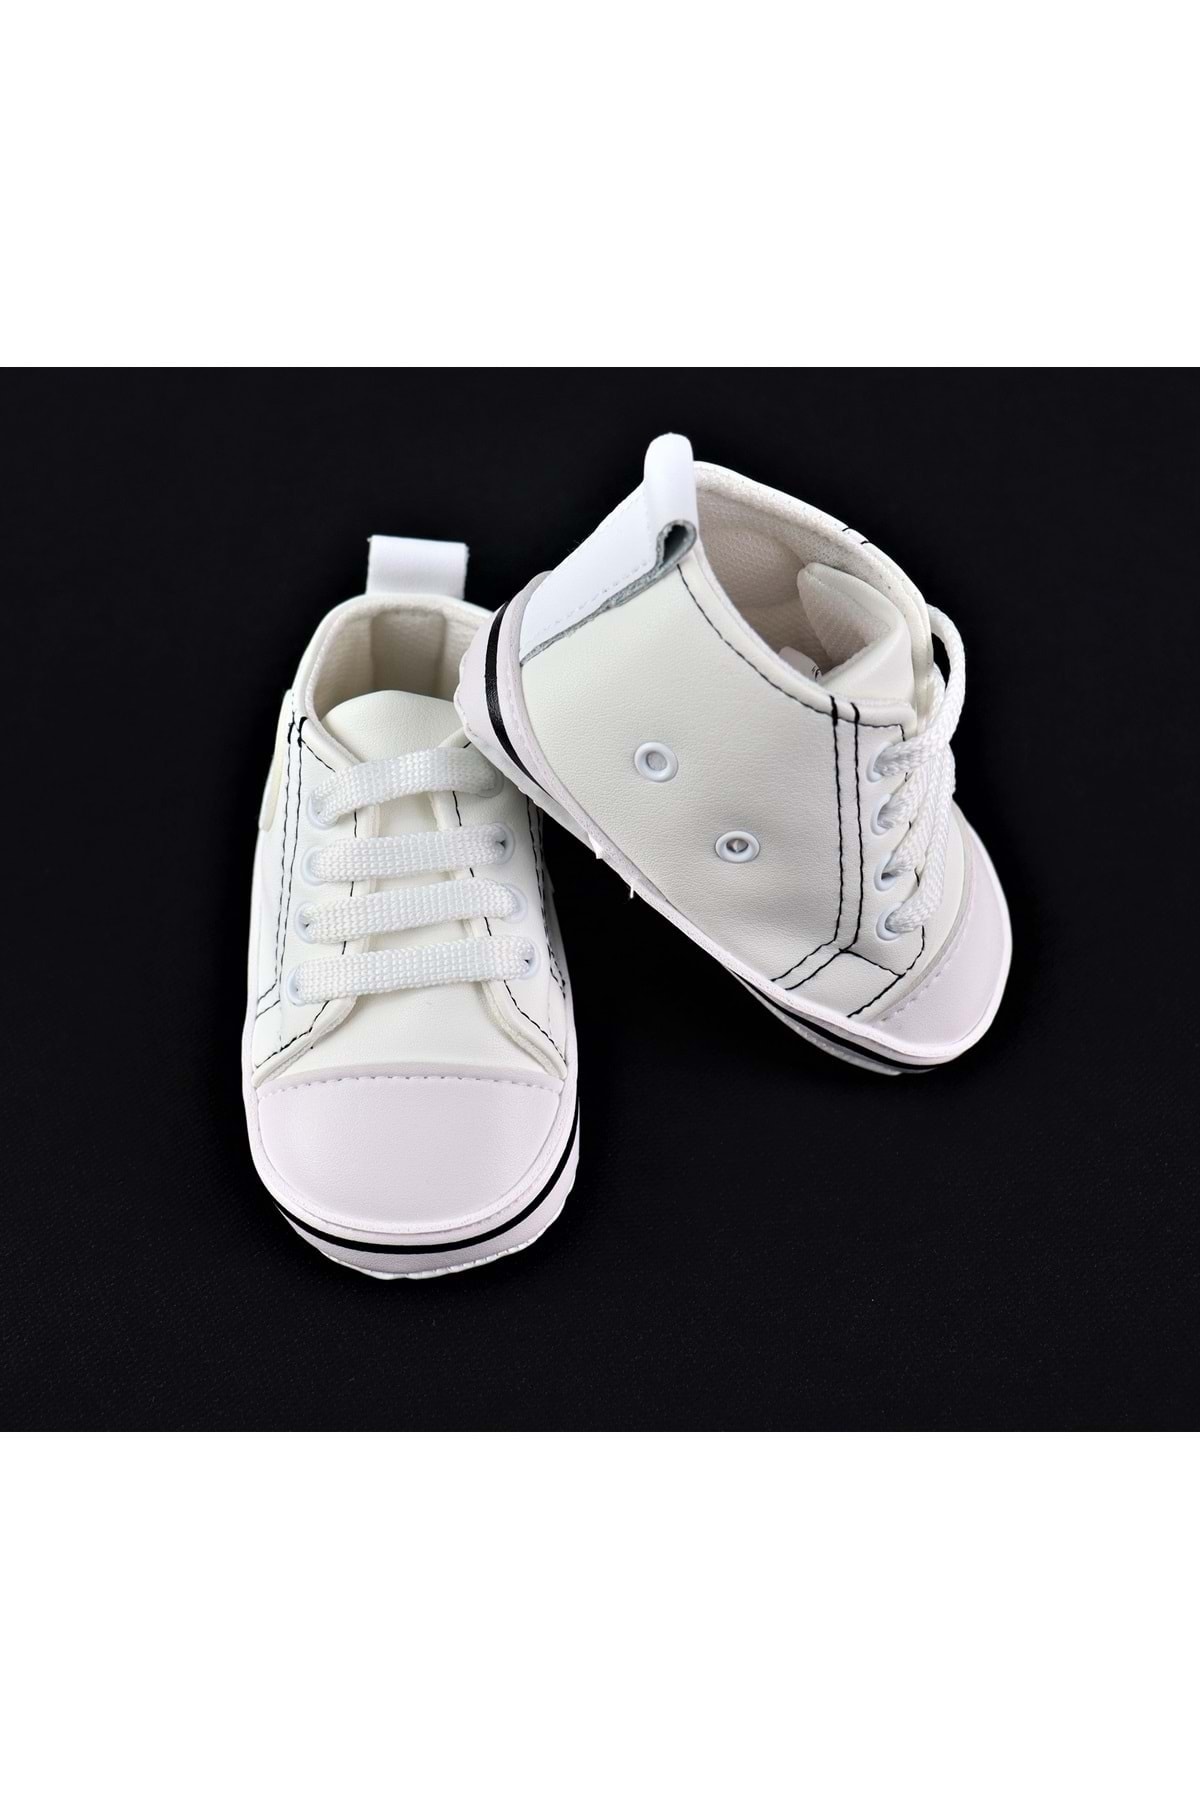 BOAC Bebek Ilk Adım Bağcıklı Ayakkabı